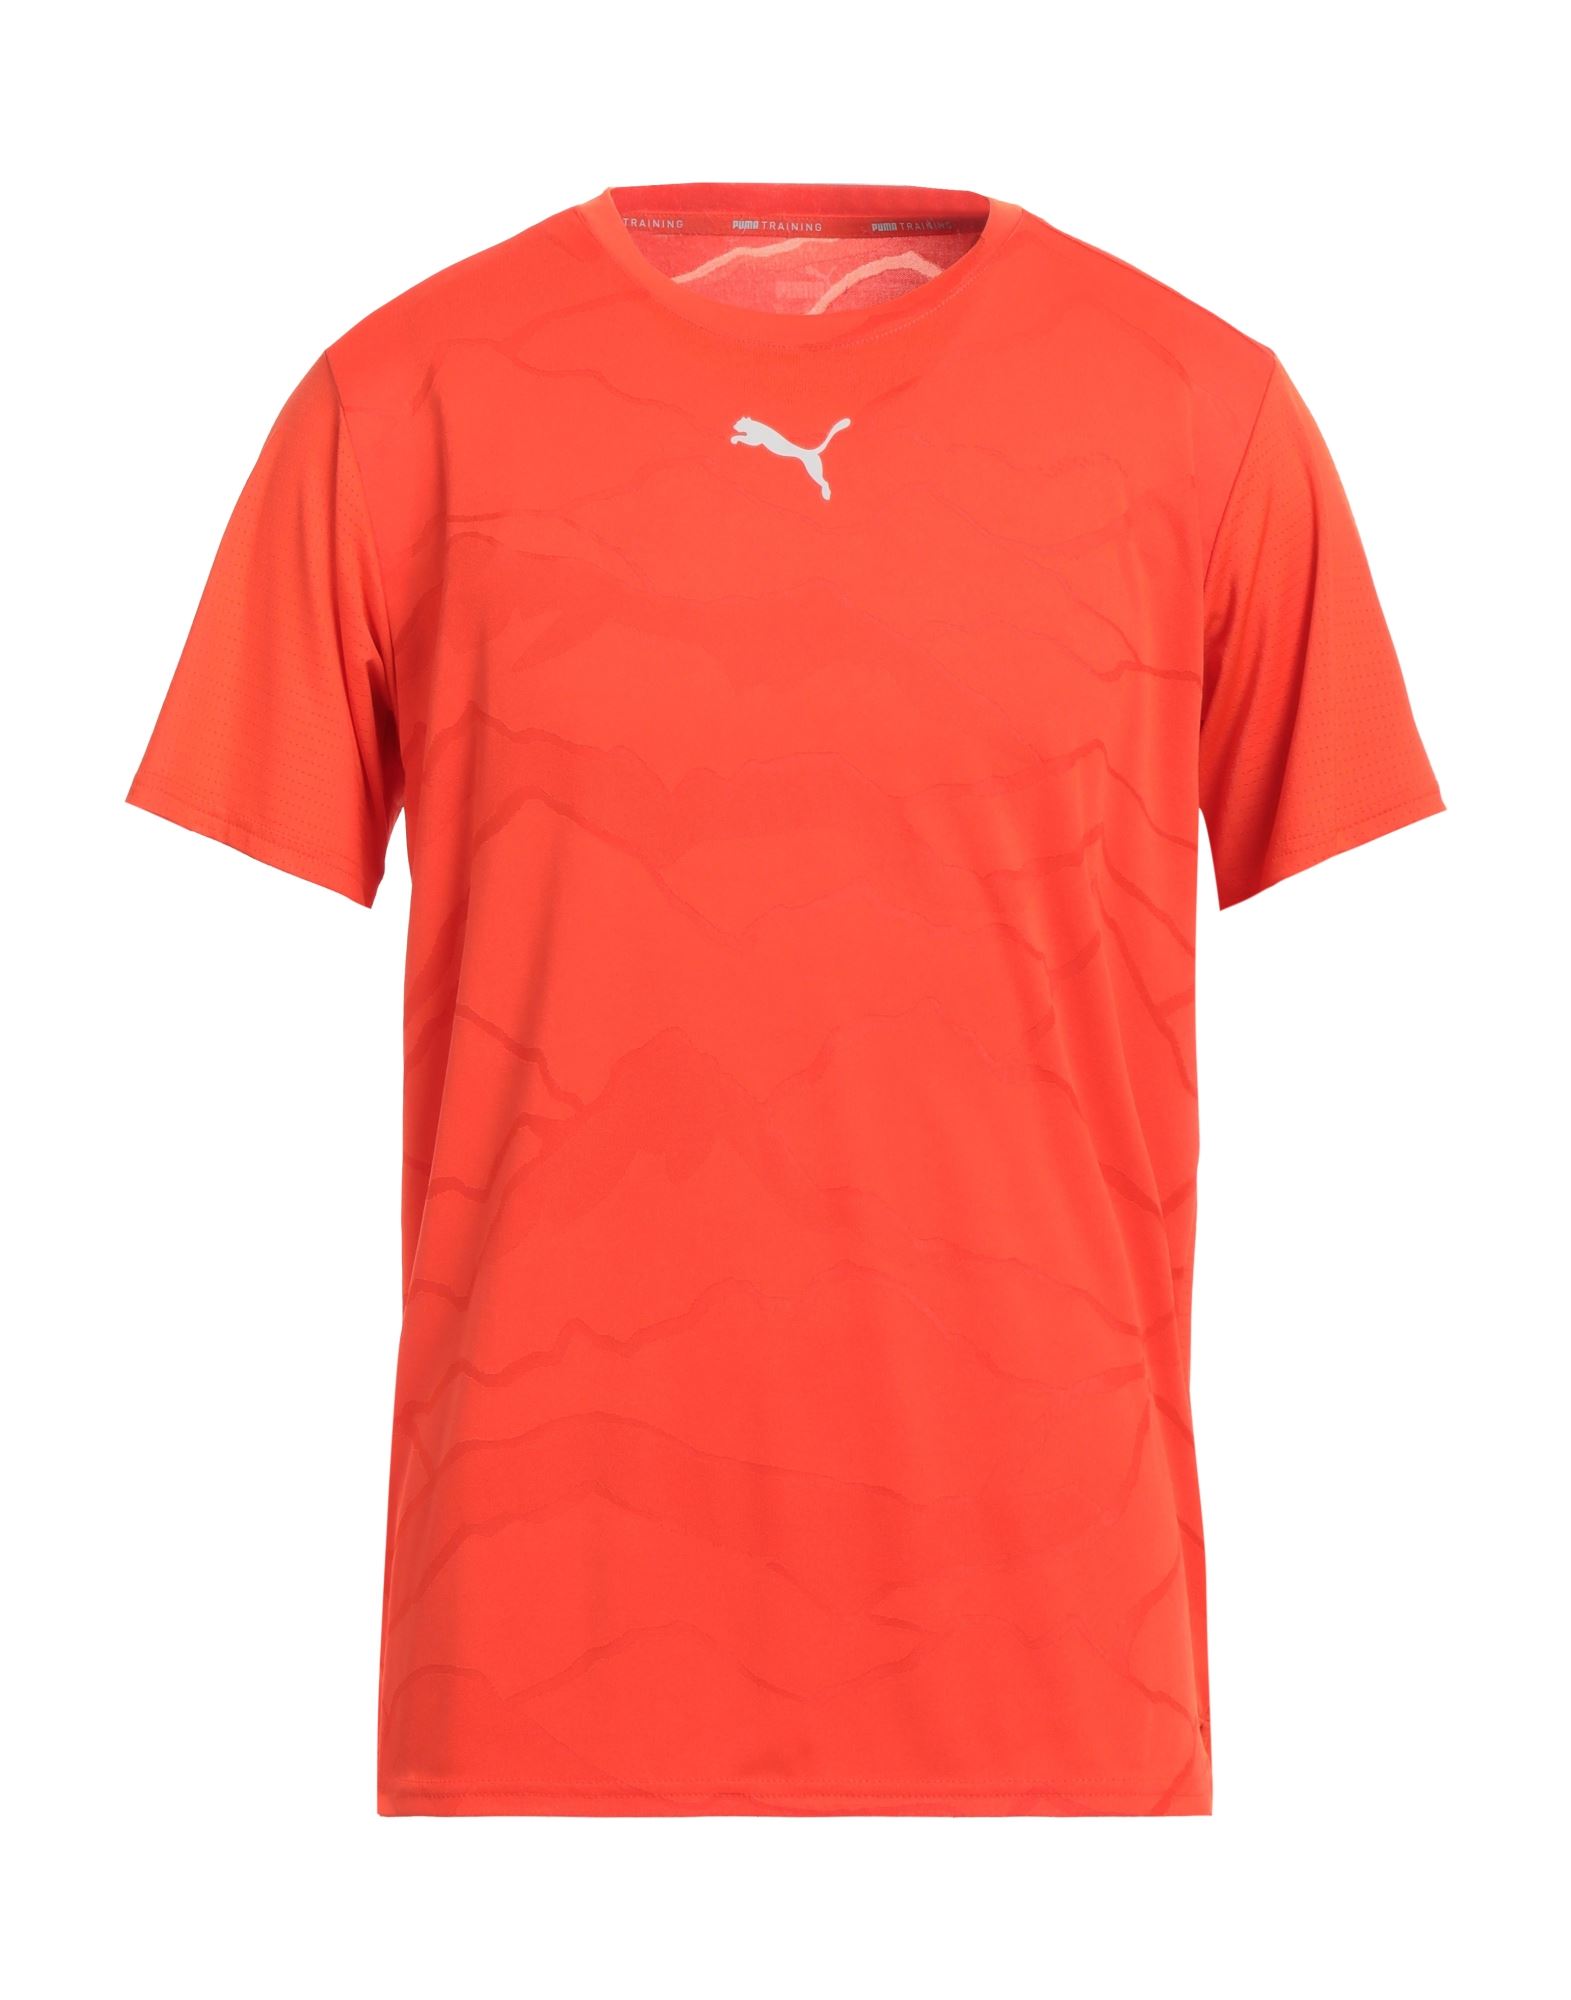 PUMA T-shirts Herren Orange von PUMA